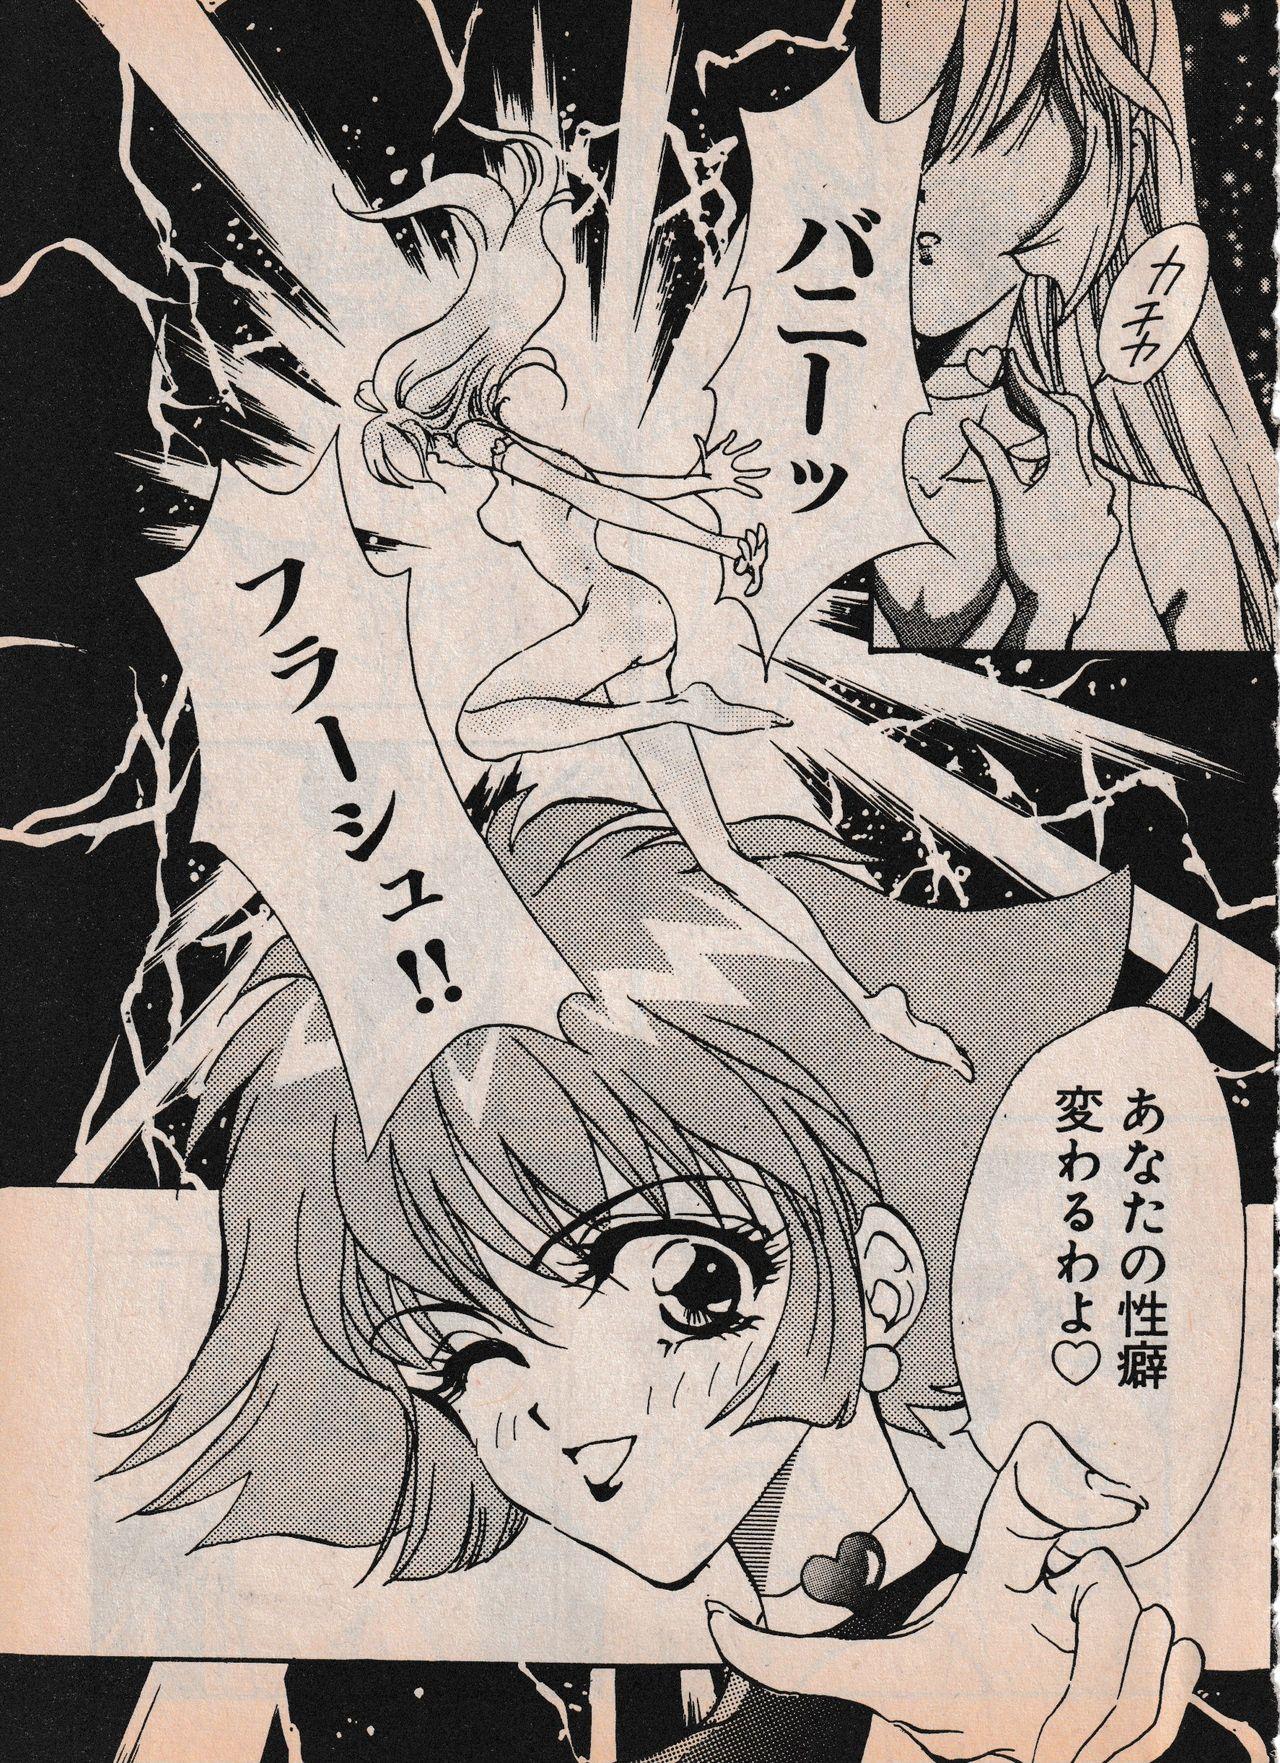 Sailor X vol. 4 - Sailor X vs. Cunty Horny! 99